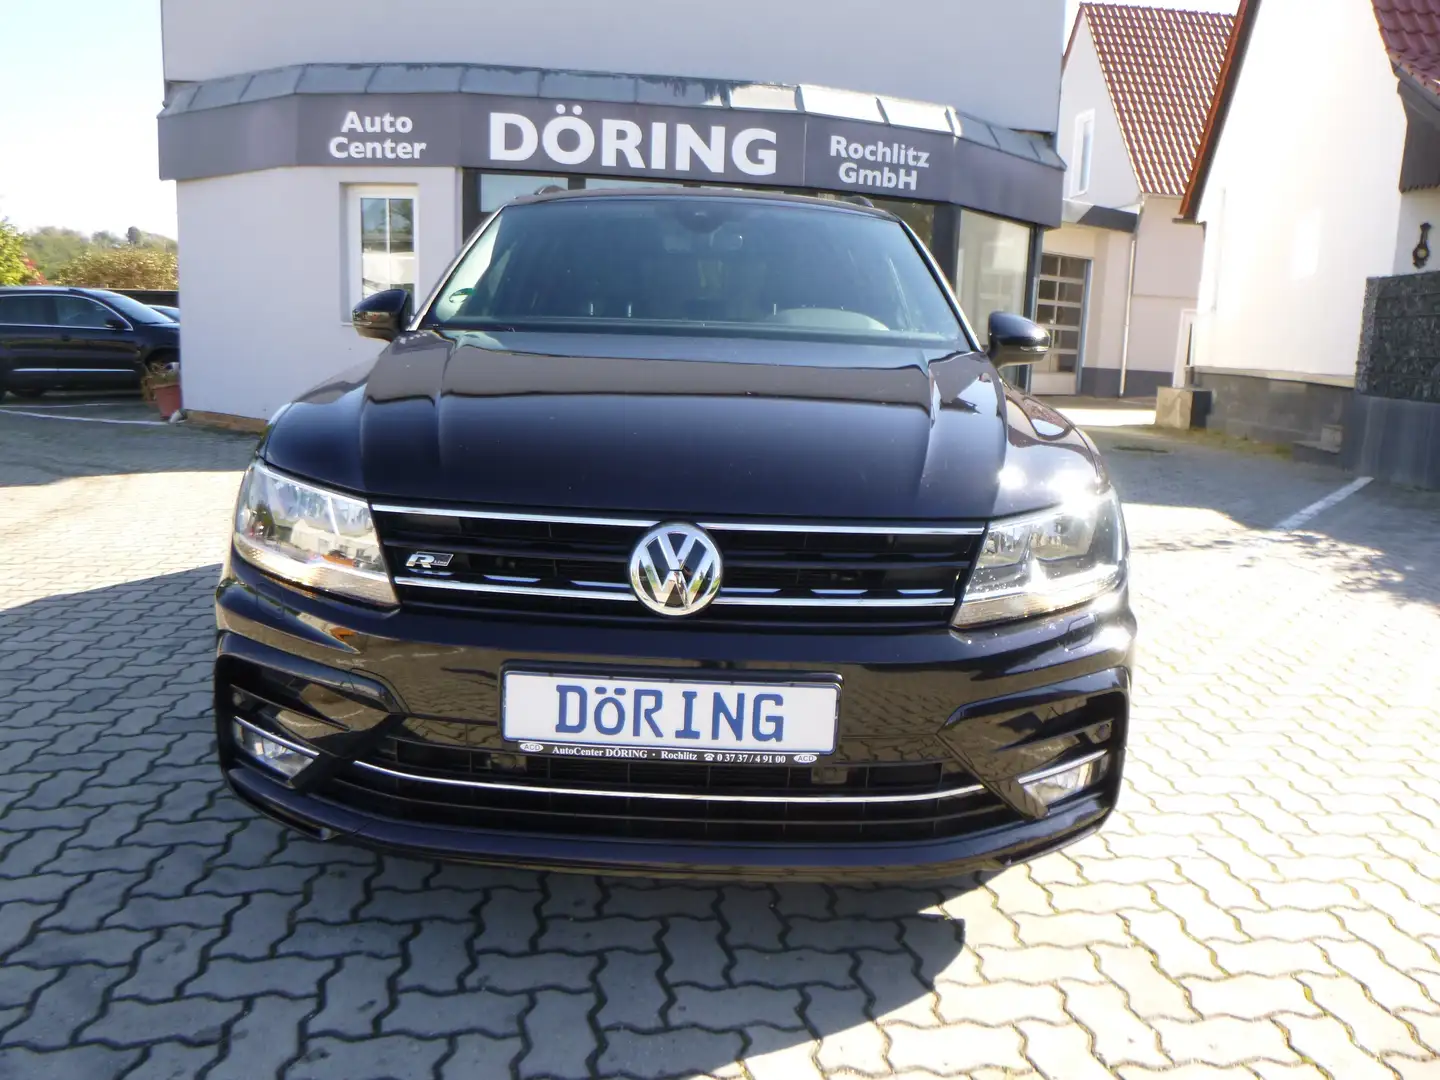 Volkswagen Tiguan SUV/Geländewagen/Pickup in Schwarz gebraucht in Rochlitz  für € 20.000